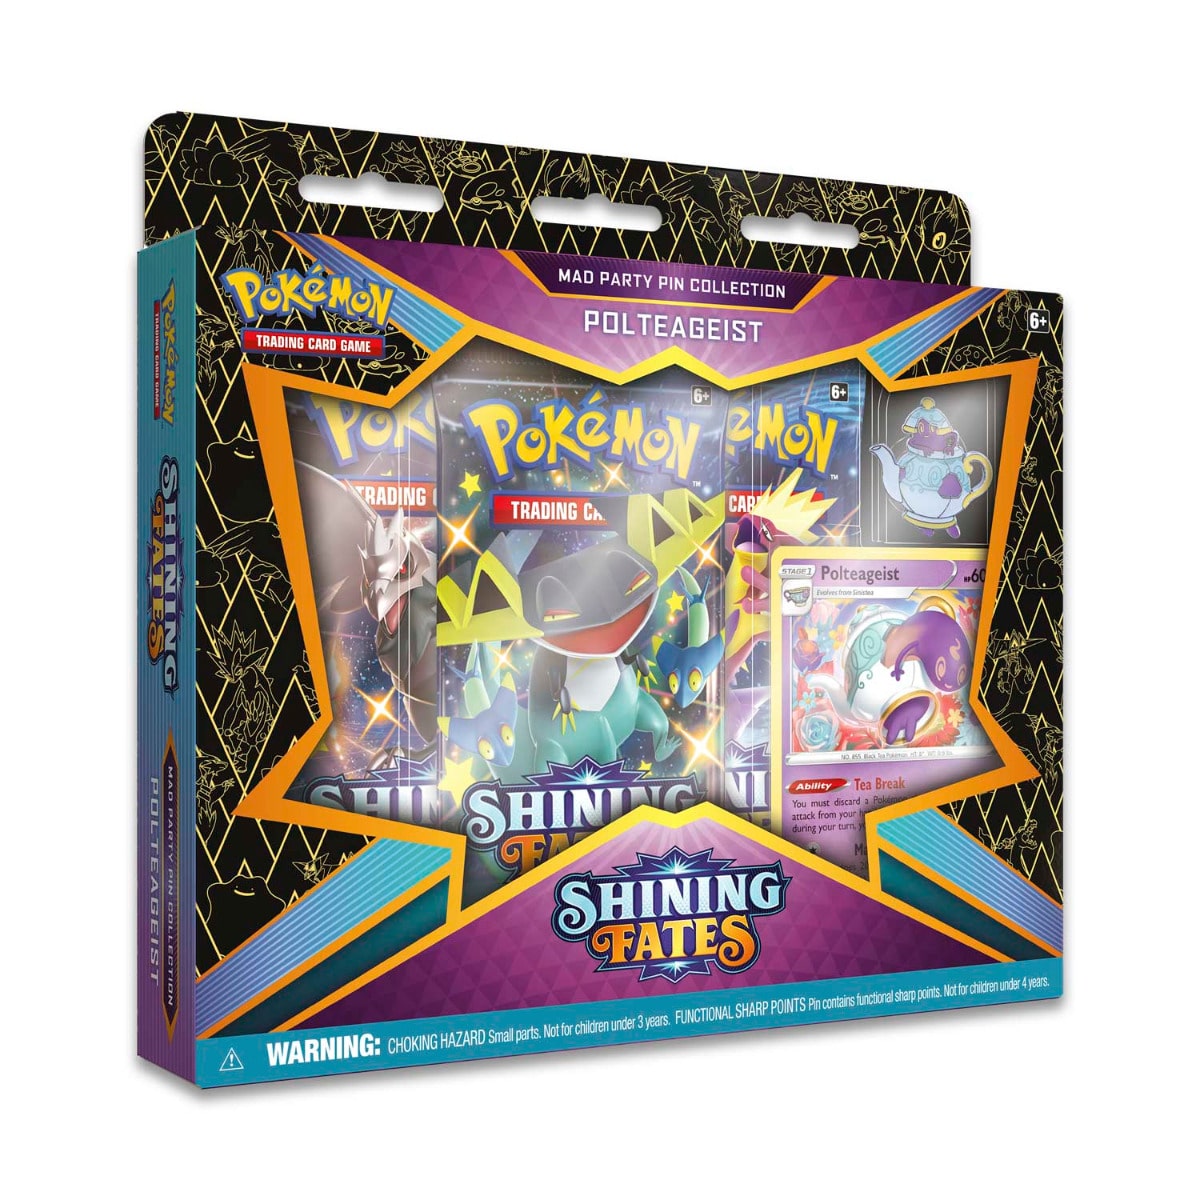 Pokémon TCG: Shining Fates Mad Party Pin Collection Polteageist keräilykorttipakkaus